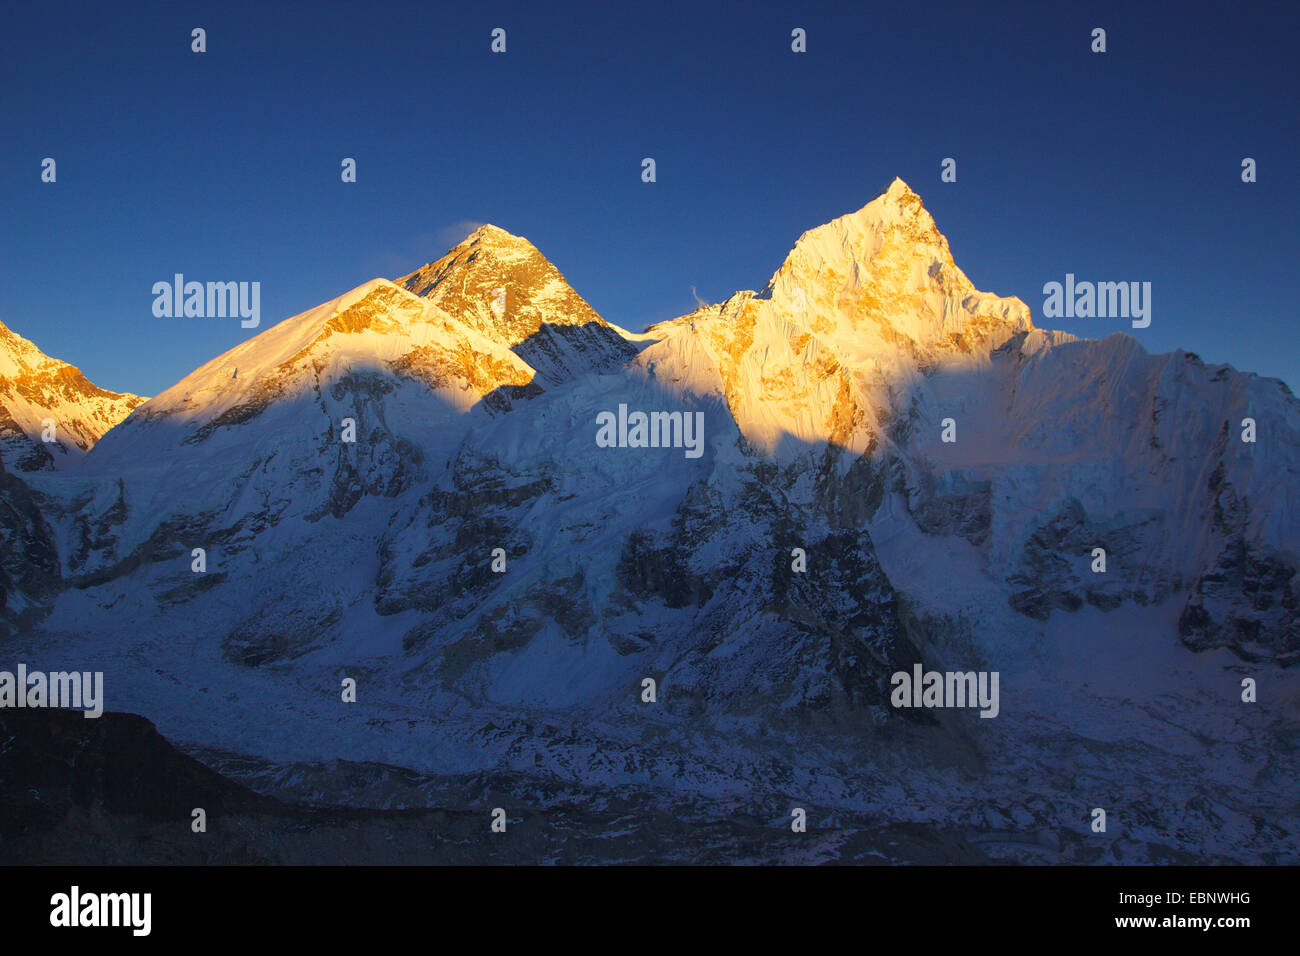 El monte Everest (a la izquierda en el frente occidental Nuptse hombro) y en luz del atardecer. Vista desde el Kala Patthar, Nepal, Himalaya, Khumbu Himal Foto de stock